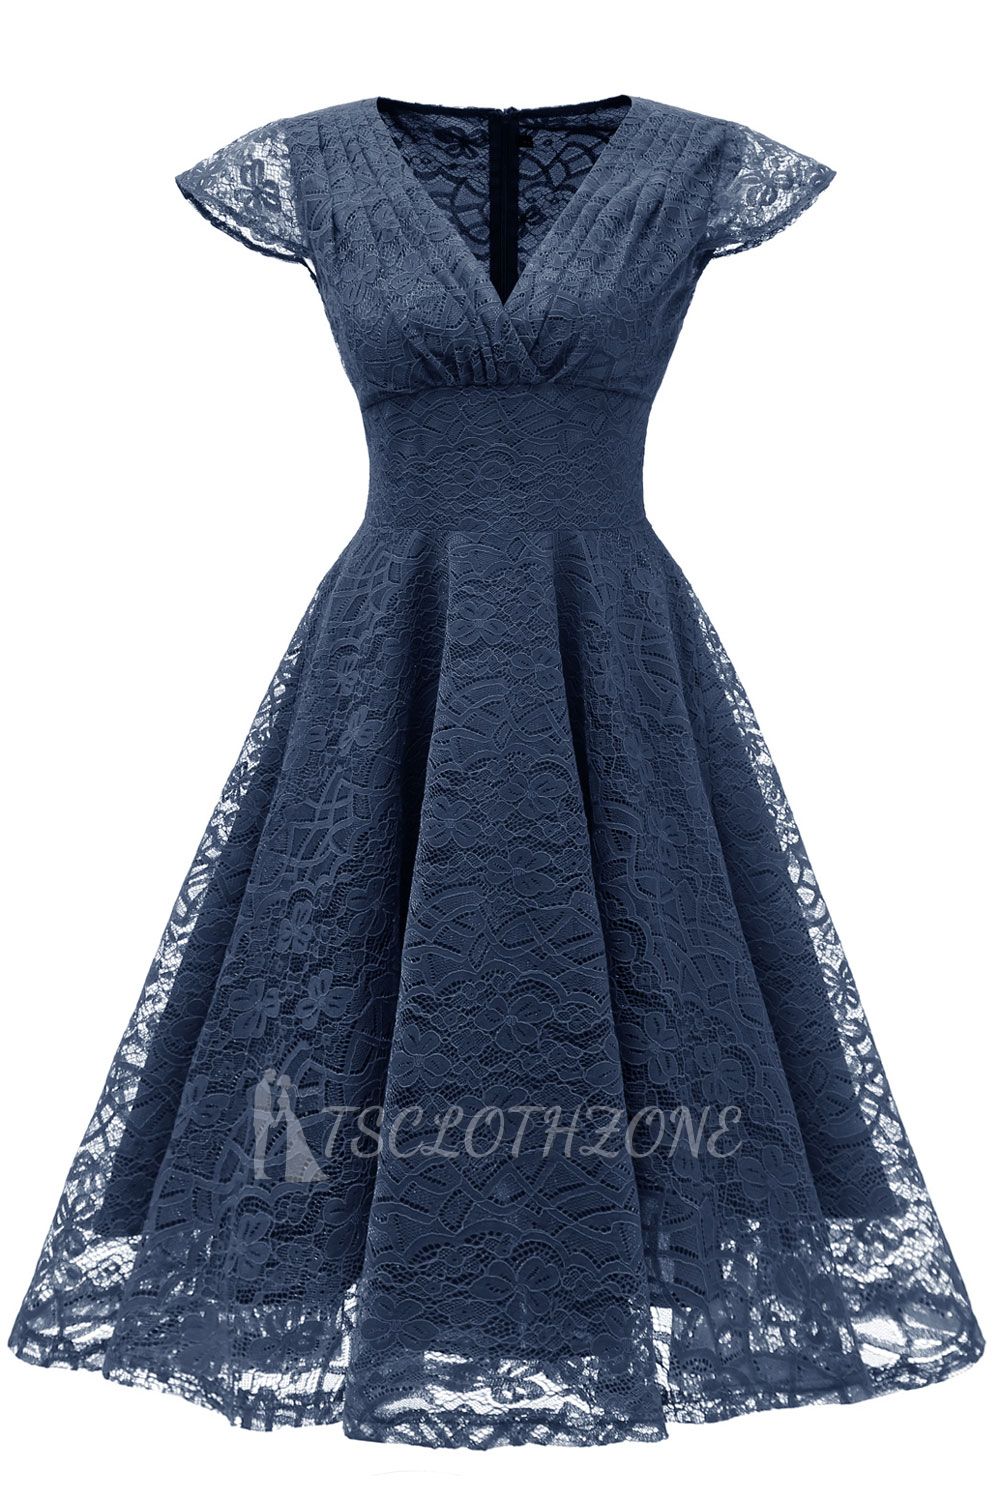 Elegante Spitze Vintage Rockabilly Kleid | Schöne V-Ausschnitt Damen Kleider A-Linie